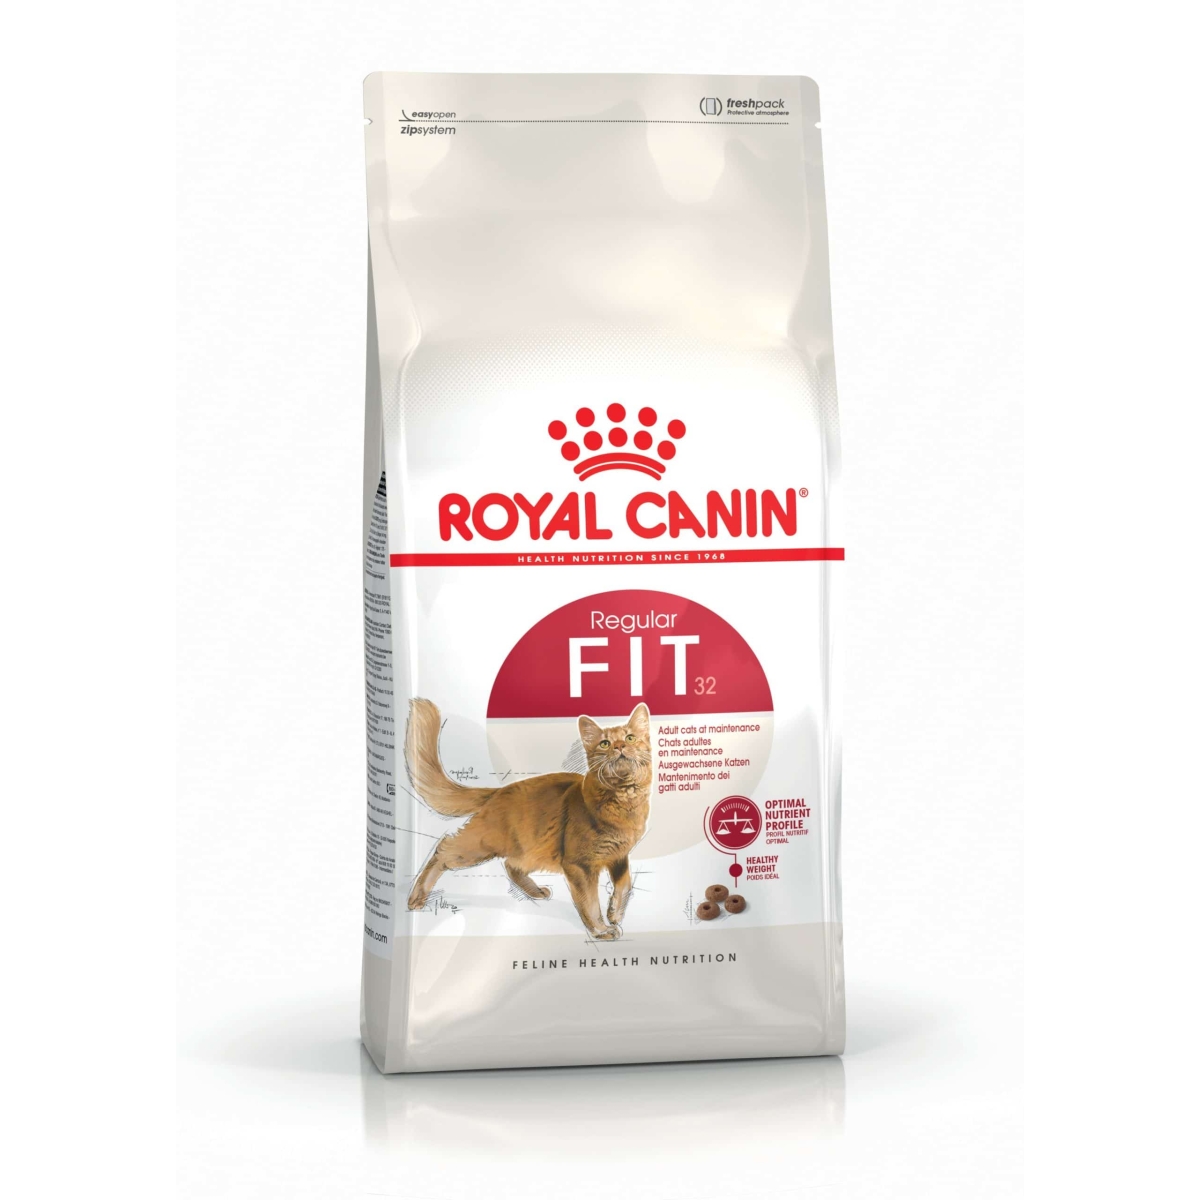 Royal Canin Fit Feline 32 kassitoit 2 kg